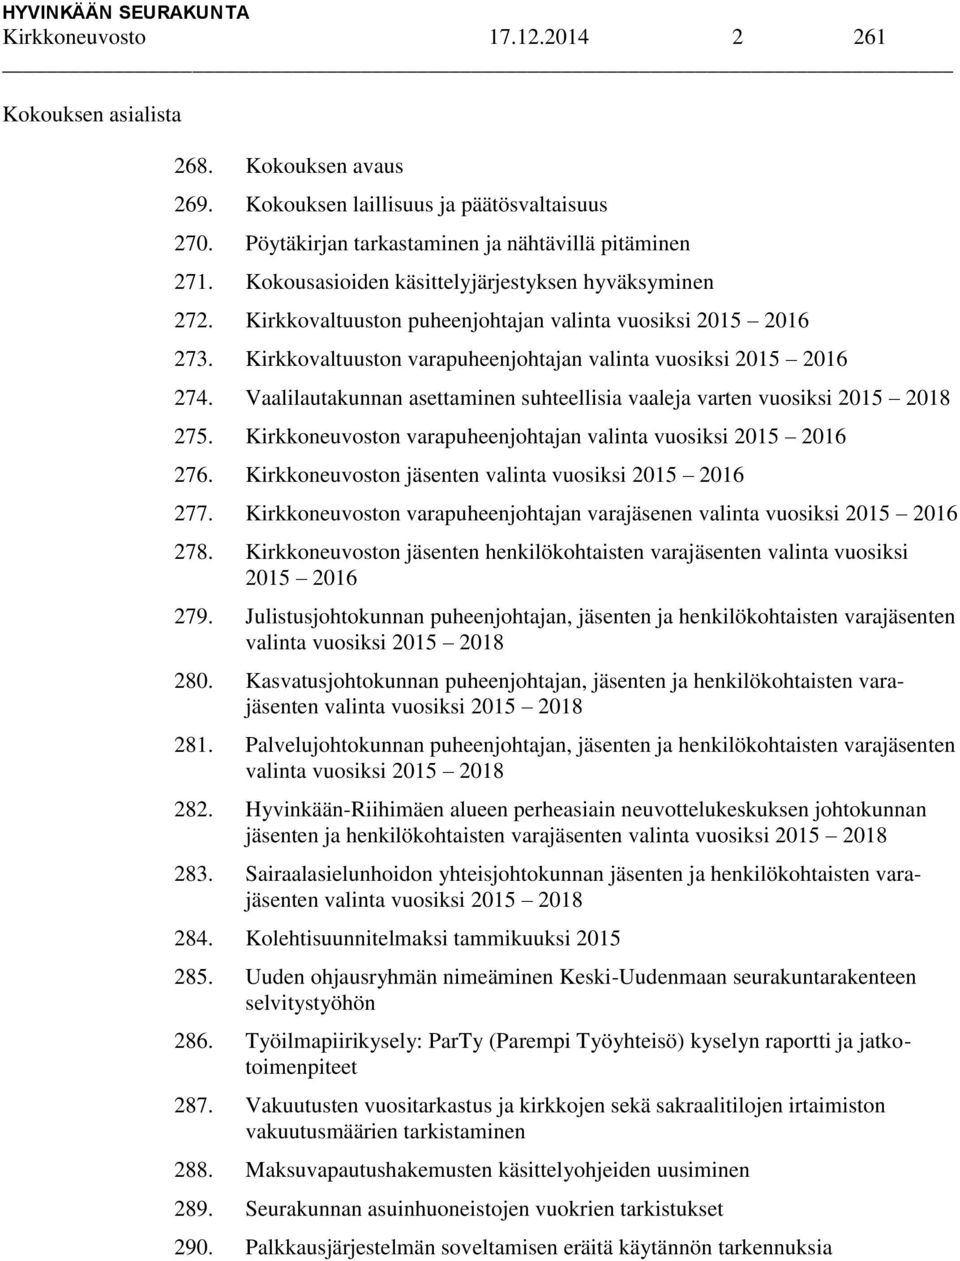 Vaalilautakunnan asettaminen suhteellisia vaaleja varten vuosiksi 2015 2018 275. Kirkkoneuvoston varapuheenjohtajan valinta vuosiksi 2015 2016 276.